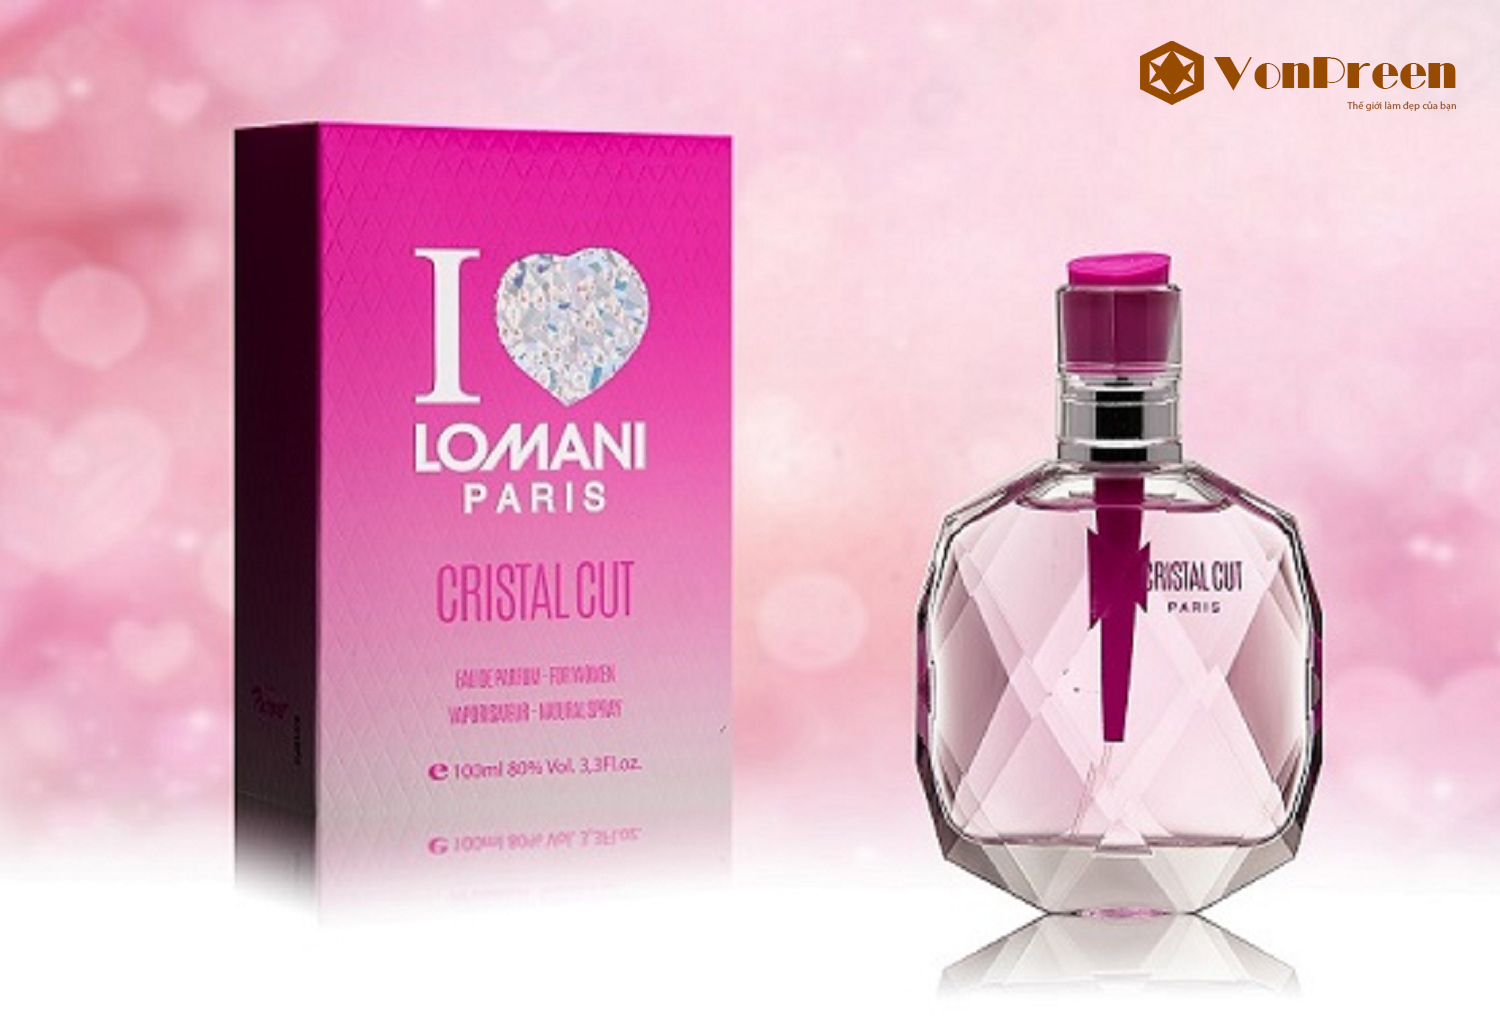 Nước hoa Lomani Cristal Cut 100ml, mang đến hương thơm thanh lịch, quý phái, gợi cảm, quyến rũ.